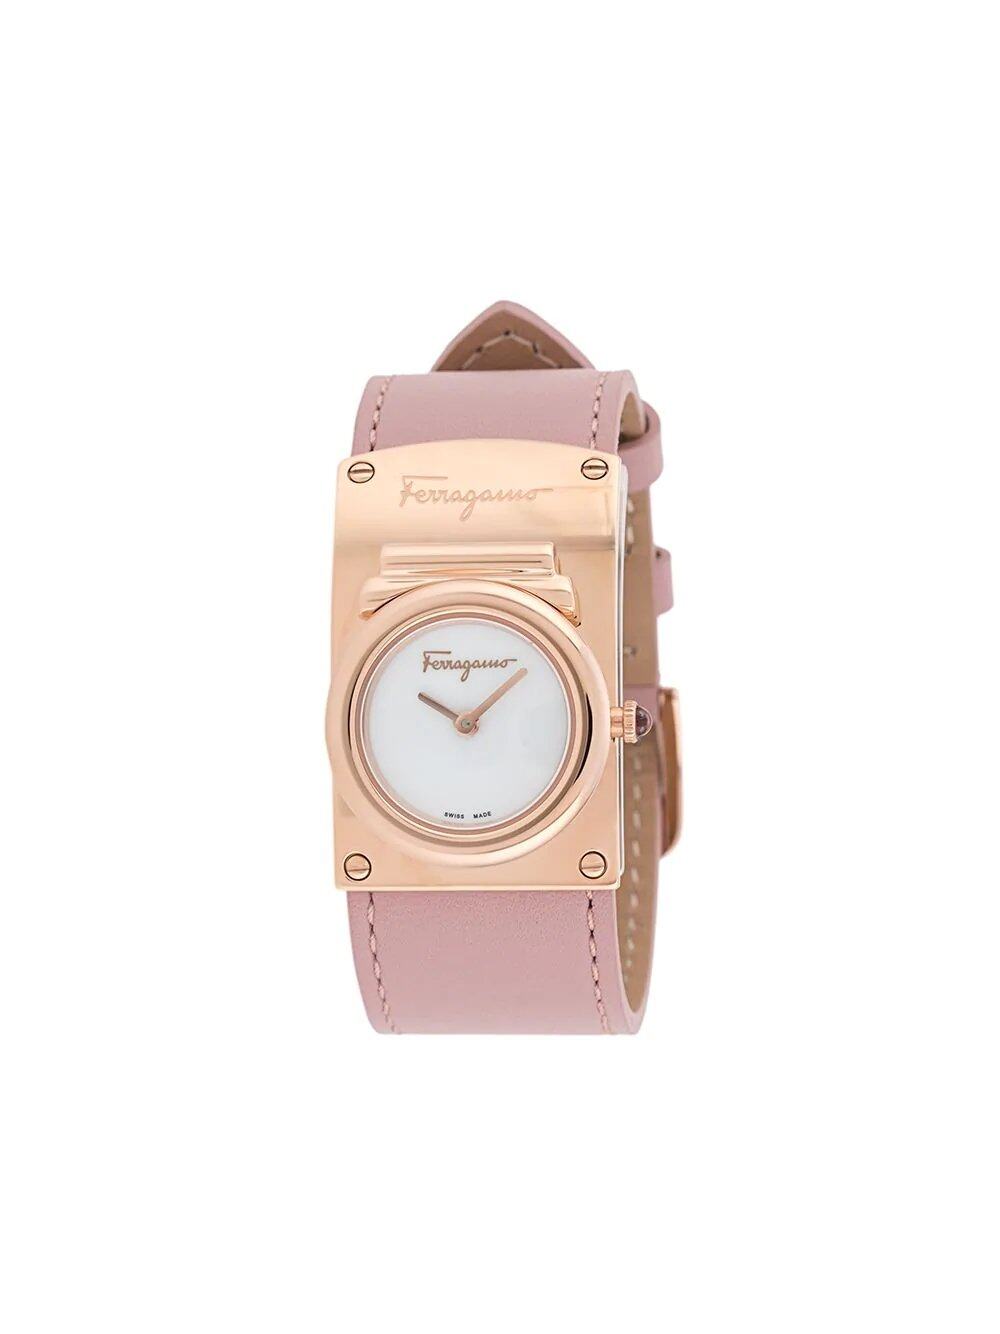 15款時裝品牌腕錶精選丨Gucci、Hermès、LV及Fendi腕錶是手袋以外最值得投資的時尚單品